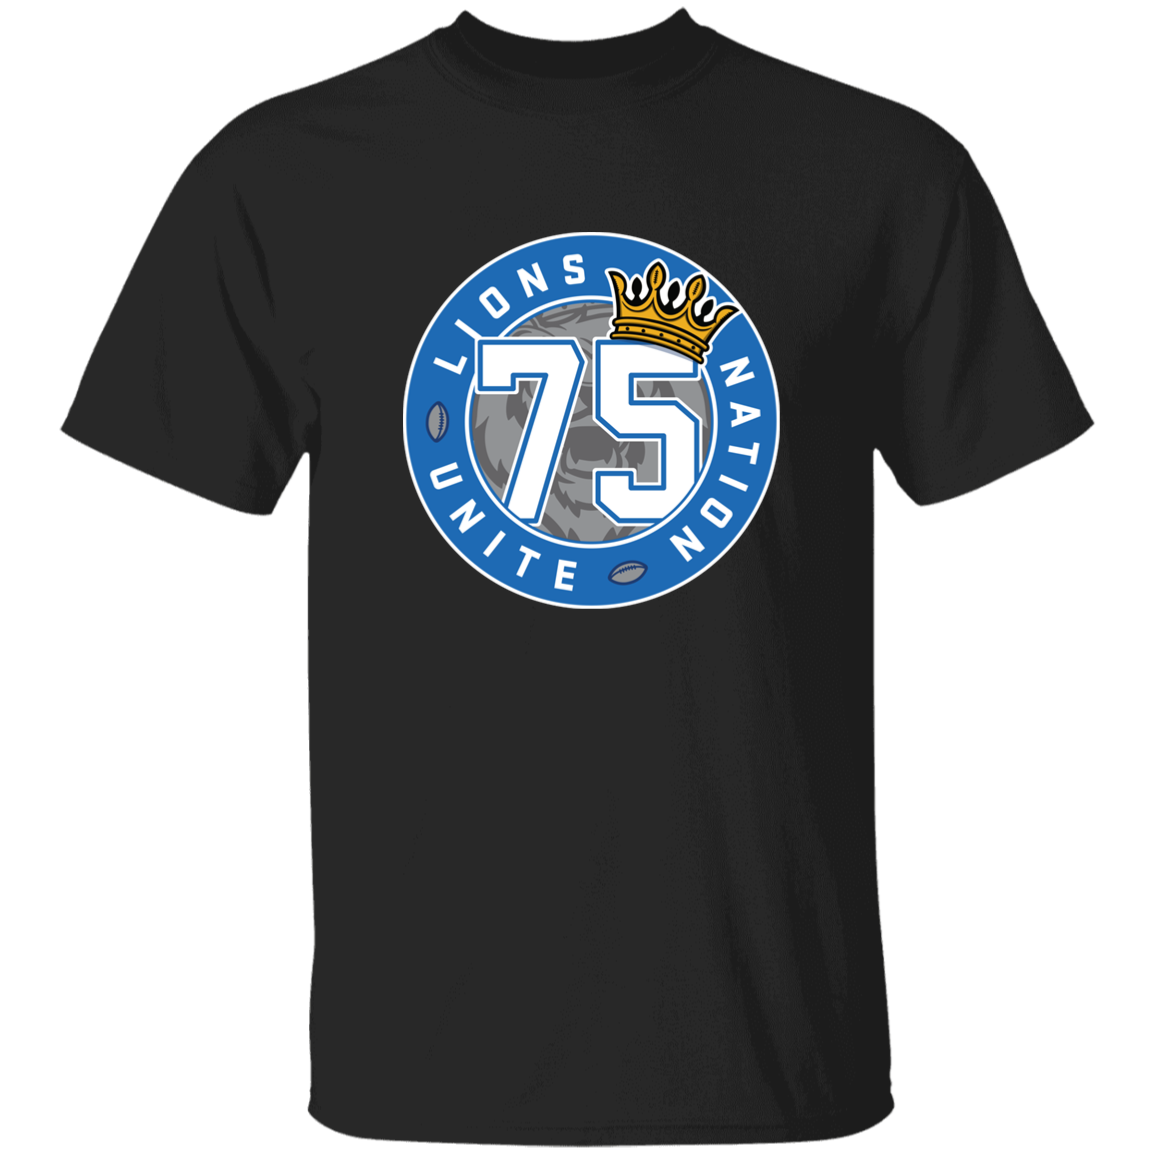 No. 75 Lions Nation Unite® Men's T-Shirt